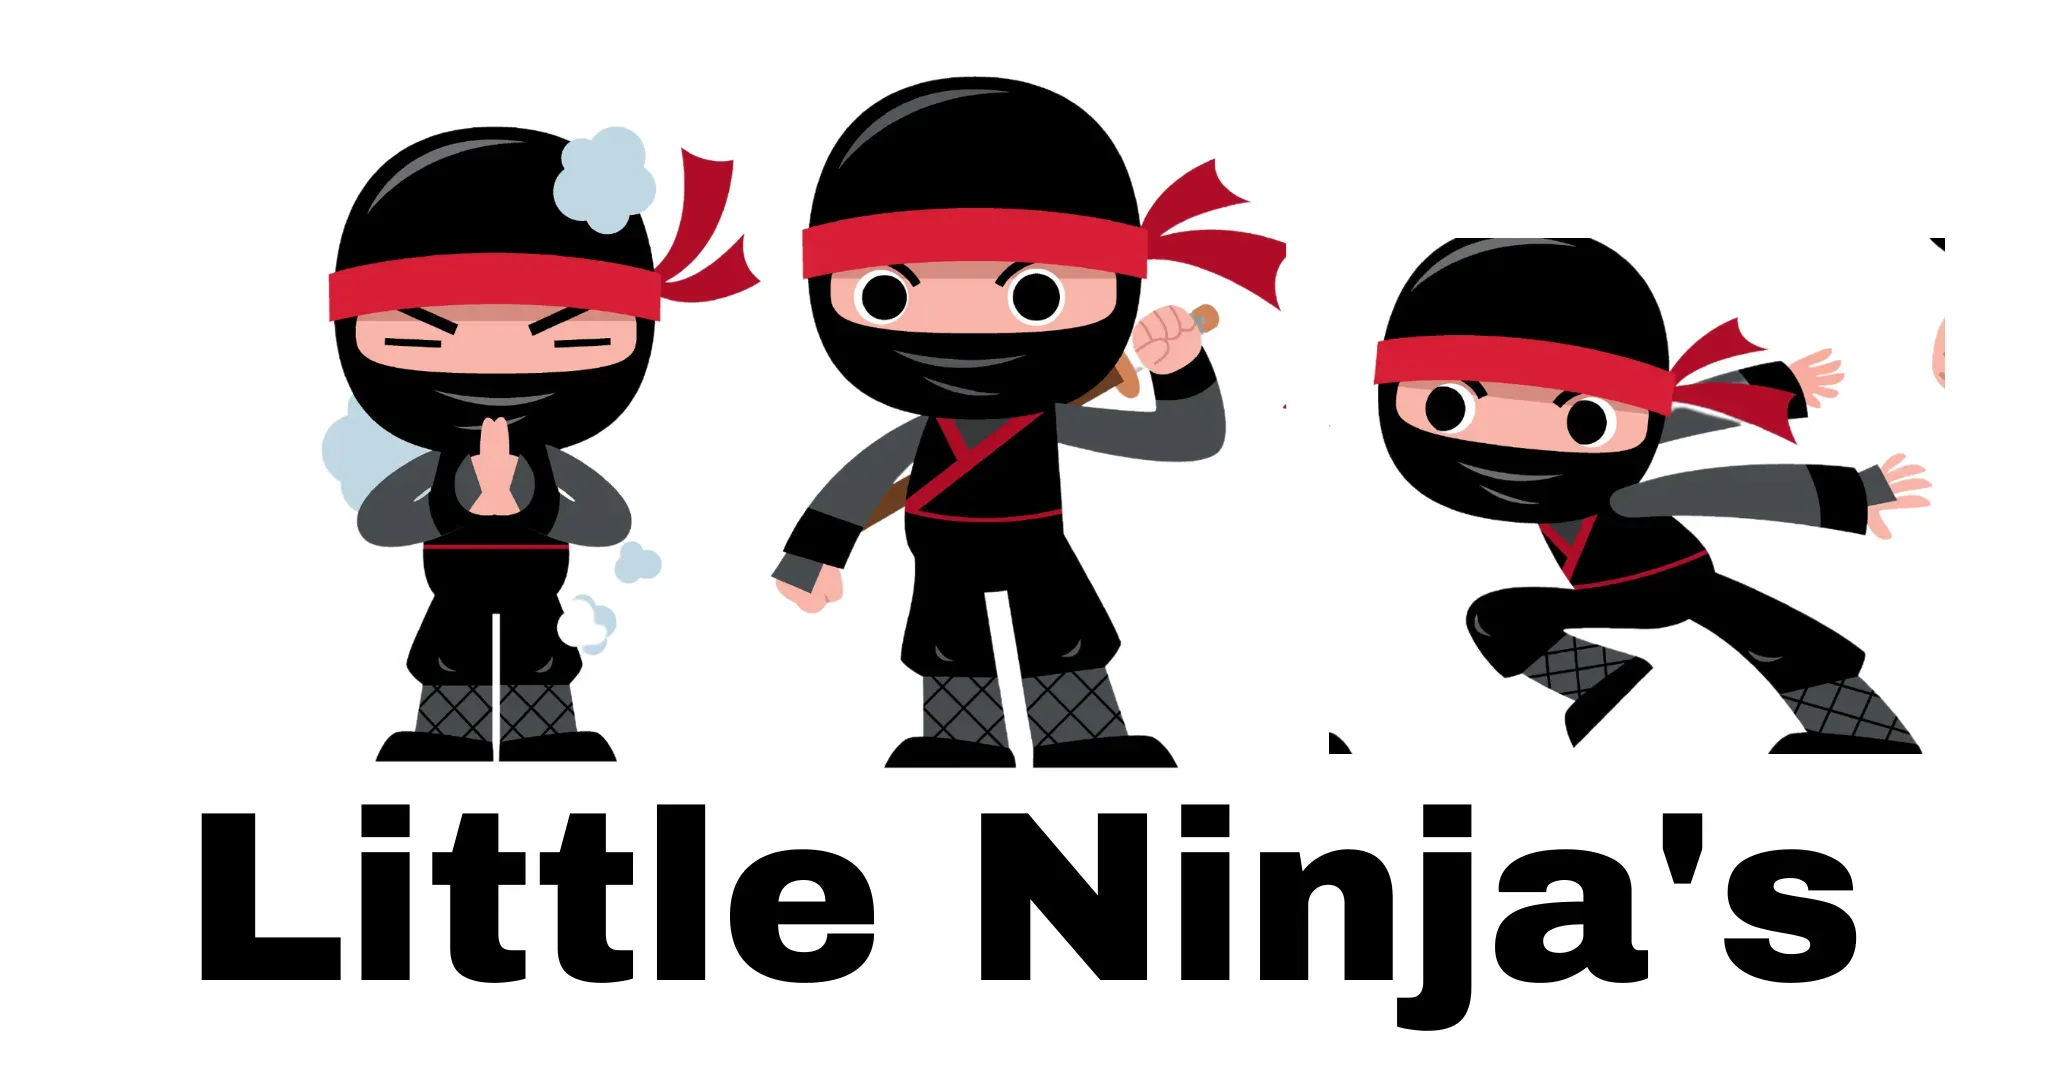 Little Ninja's